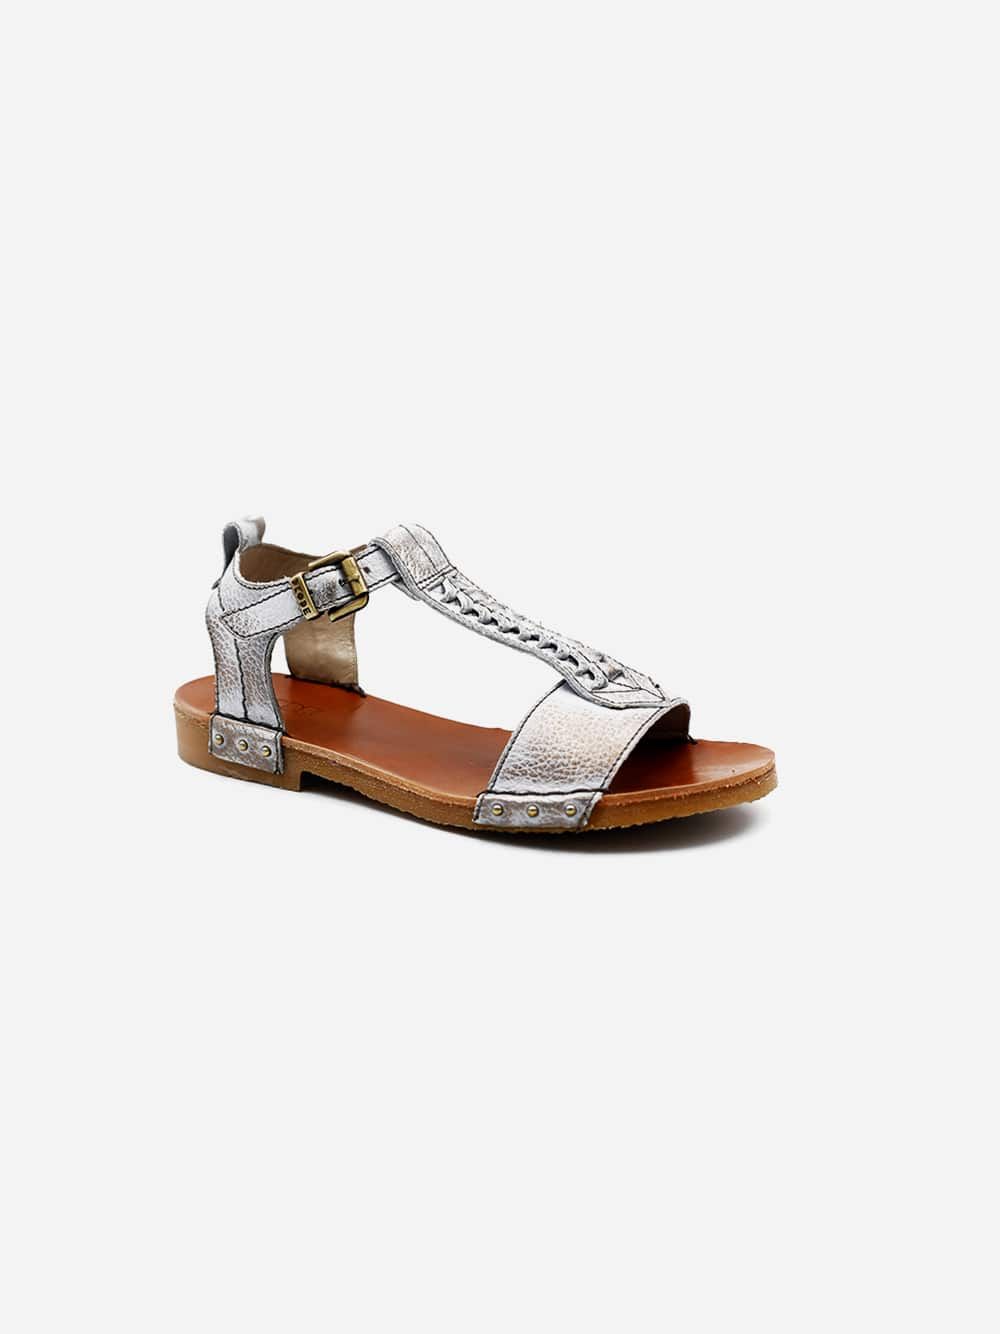 Helga Bronze Metal Sandals | Dkode